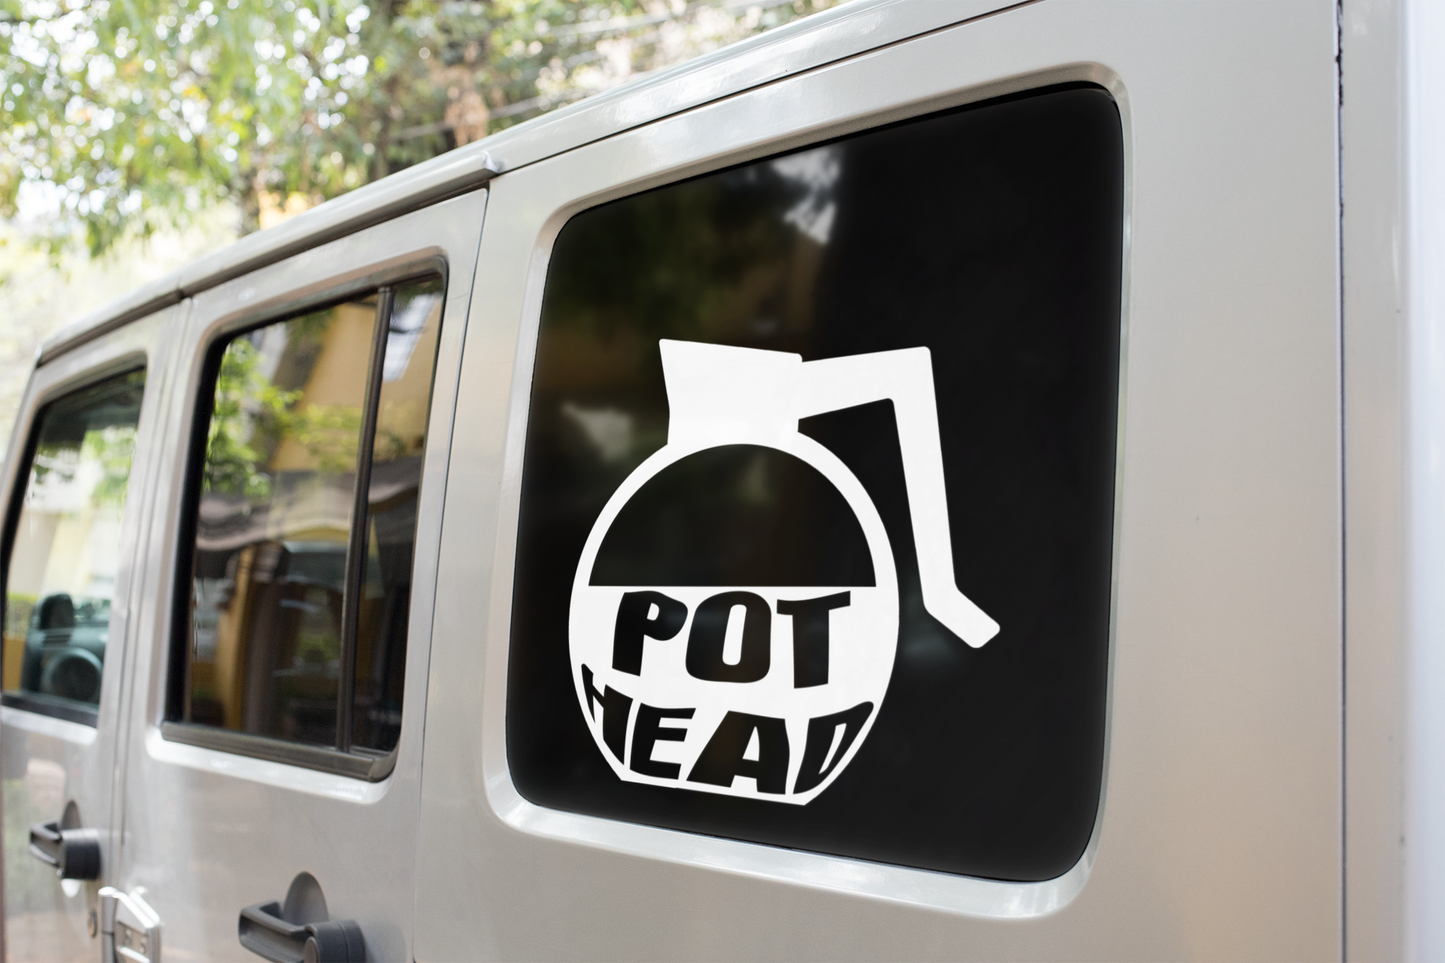 Pot Head - Vinyl decal